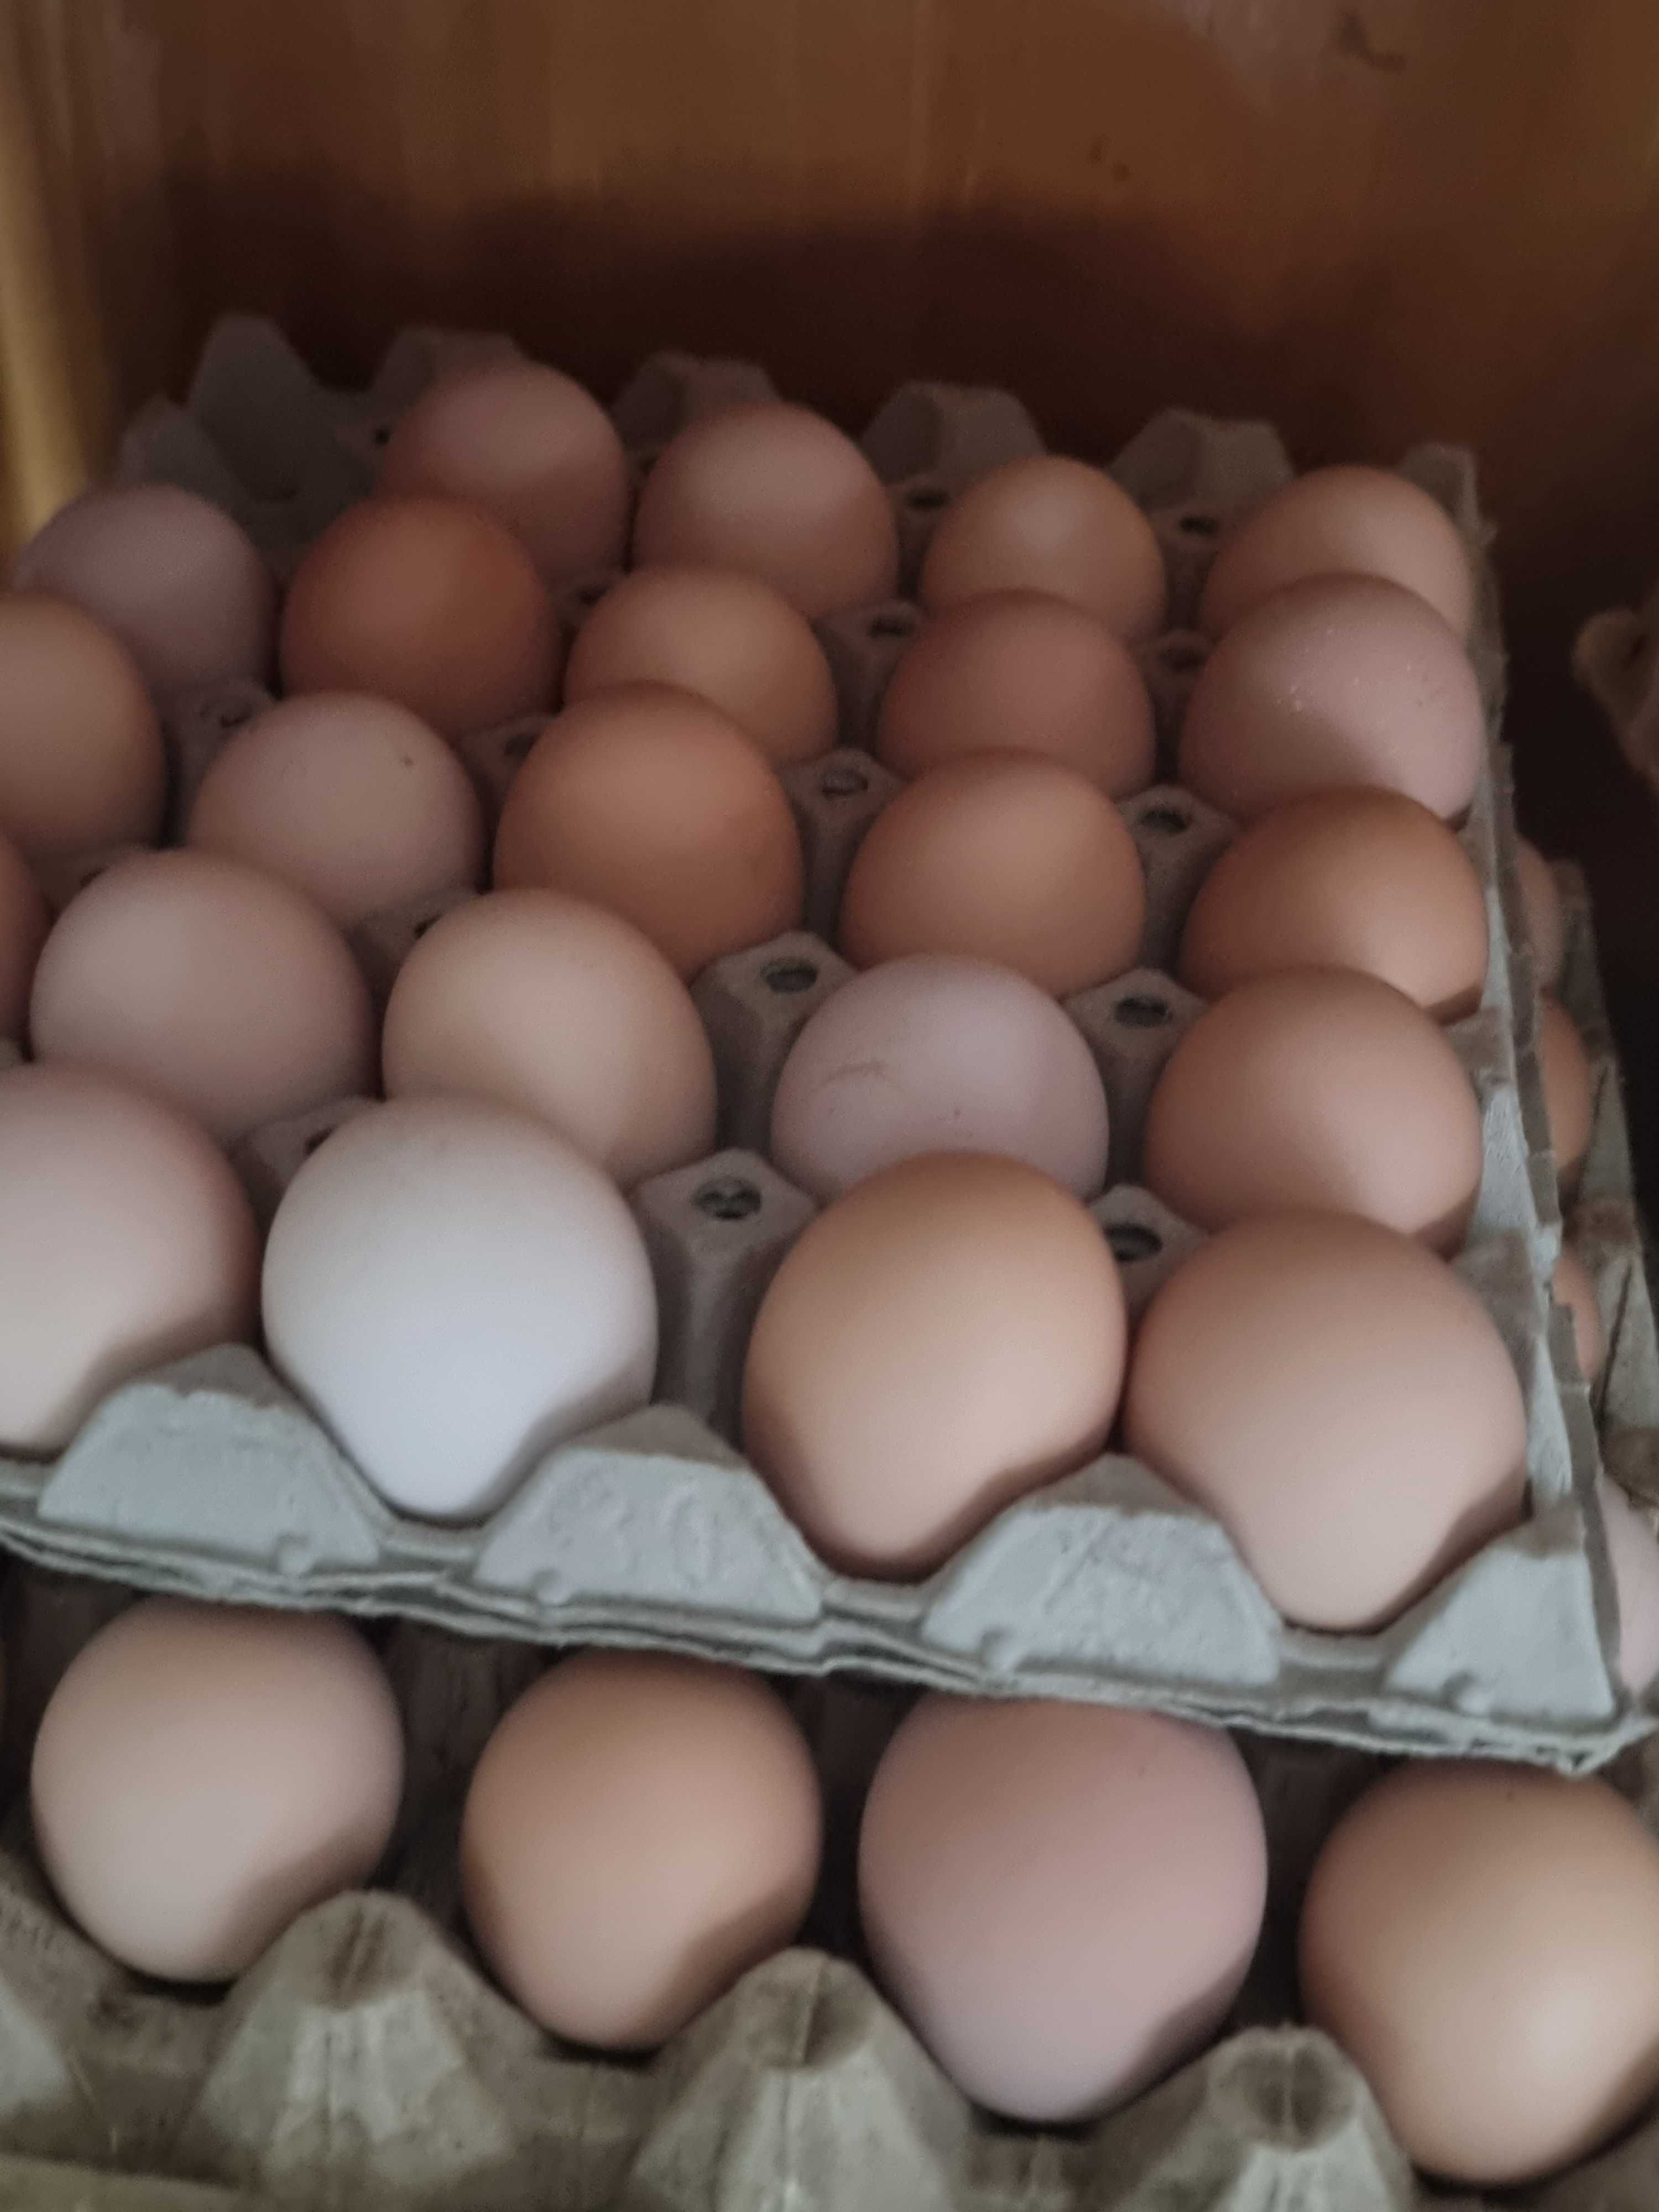 De vânzare ouă de găină de țară